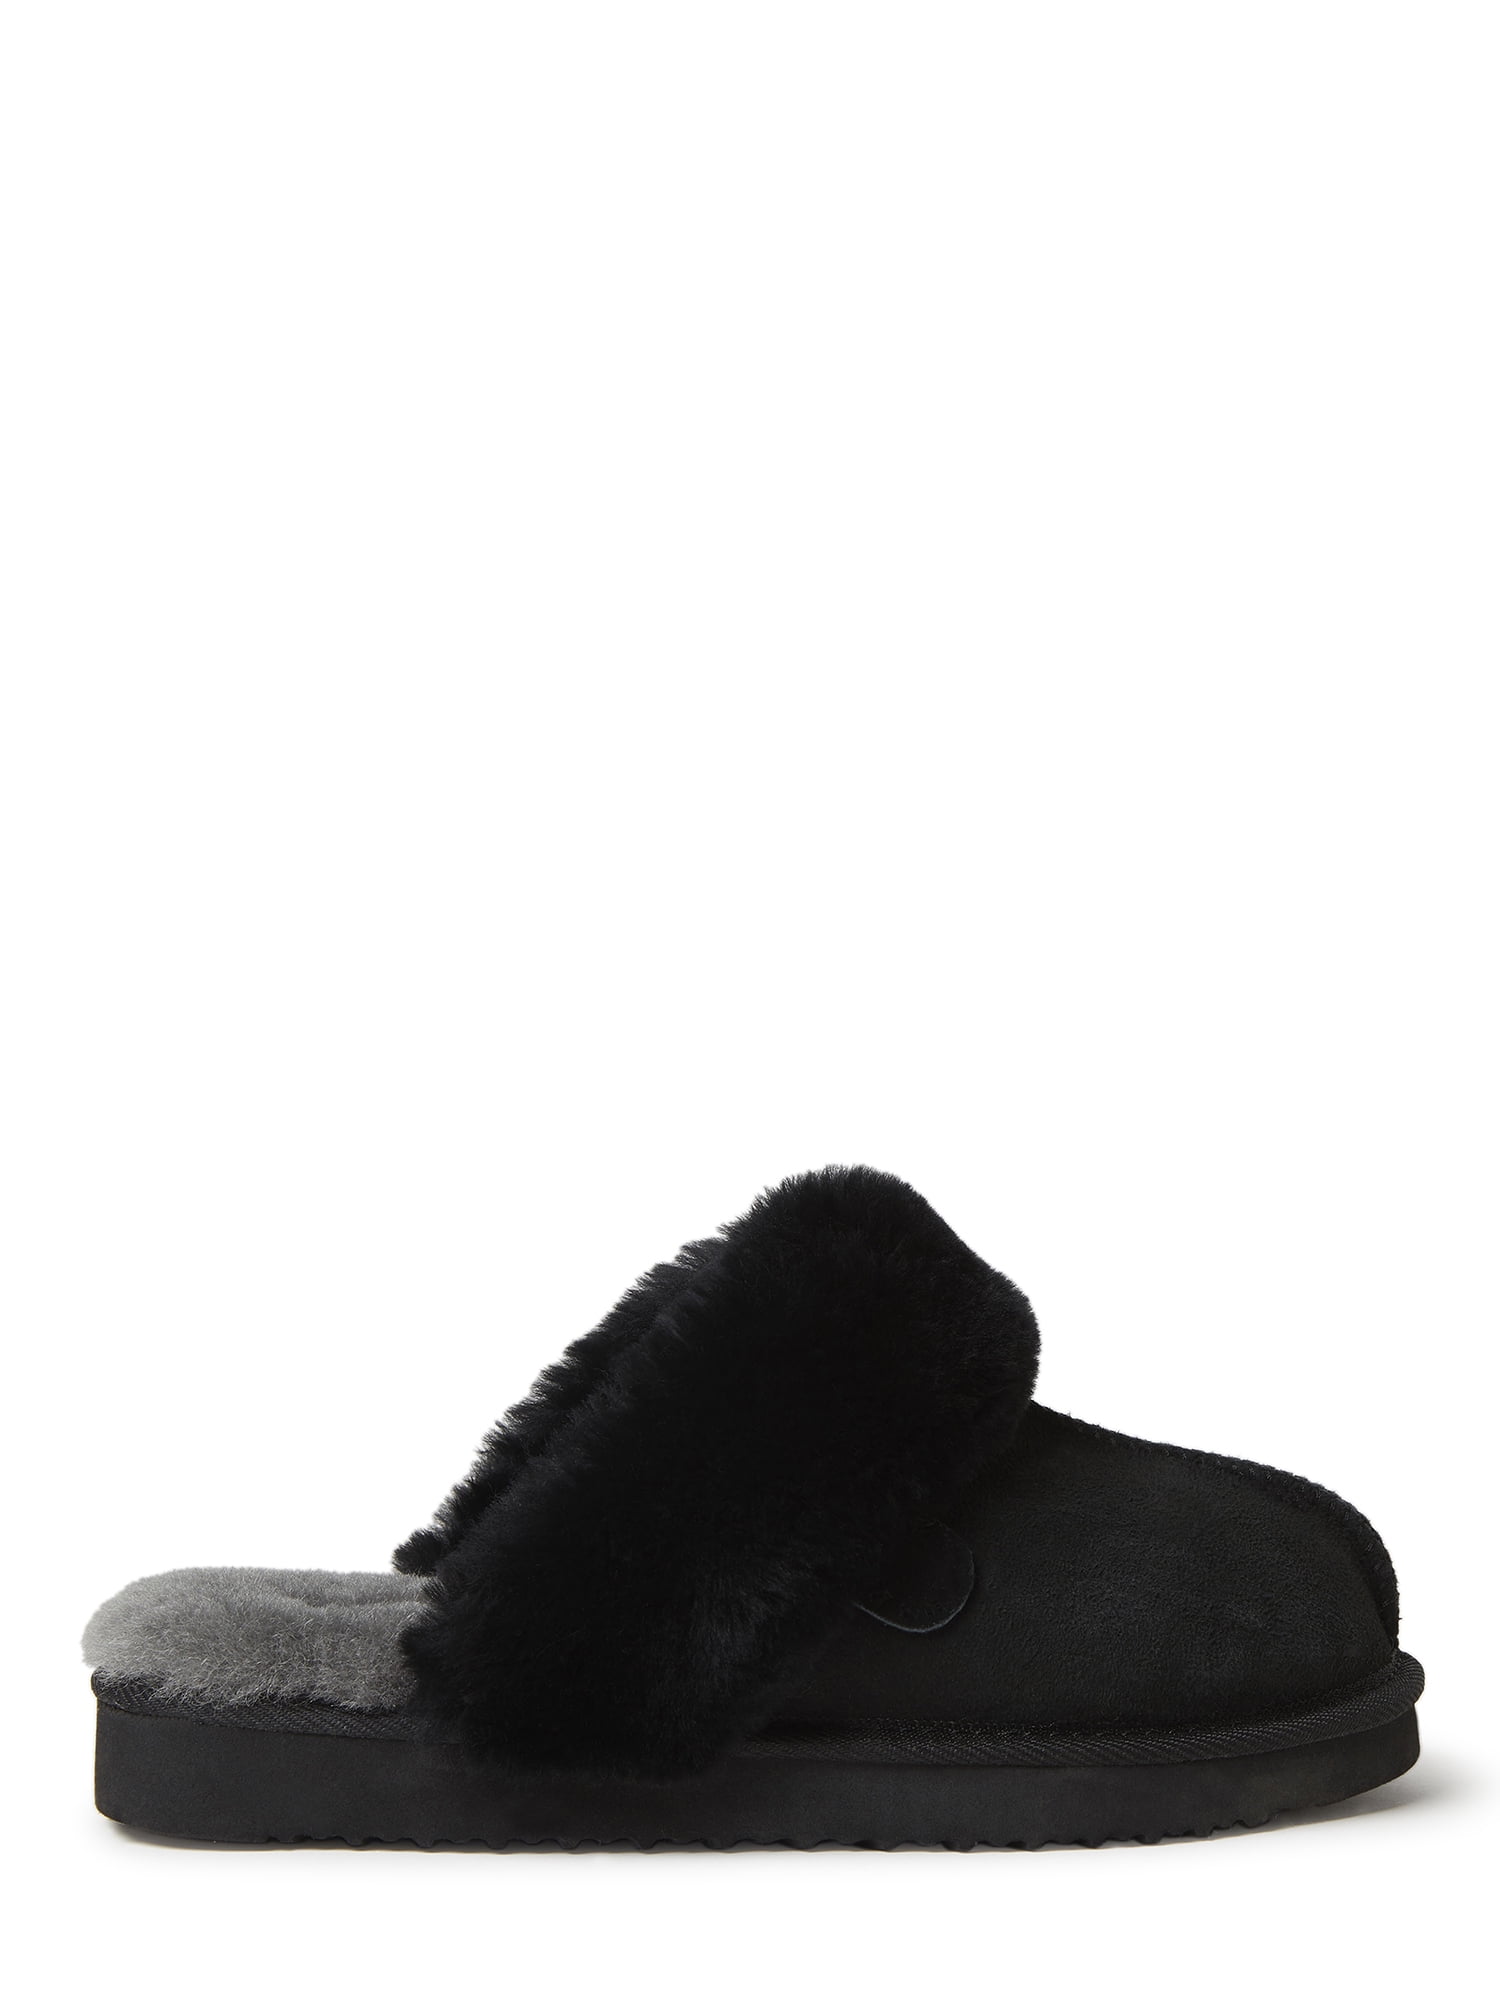 Fireside slippers - matchlopez